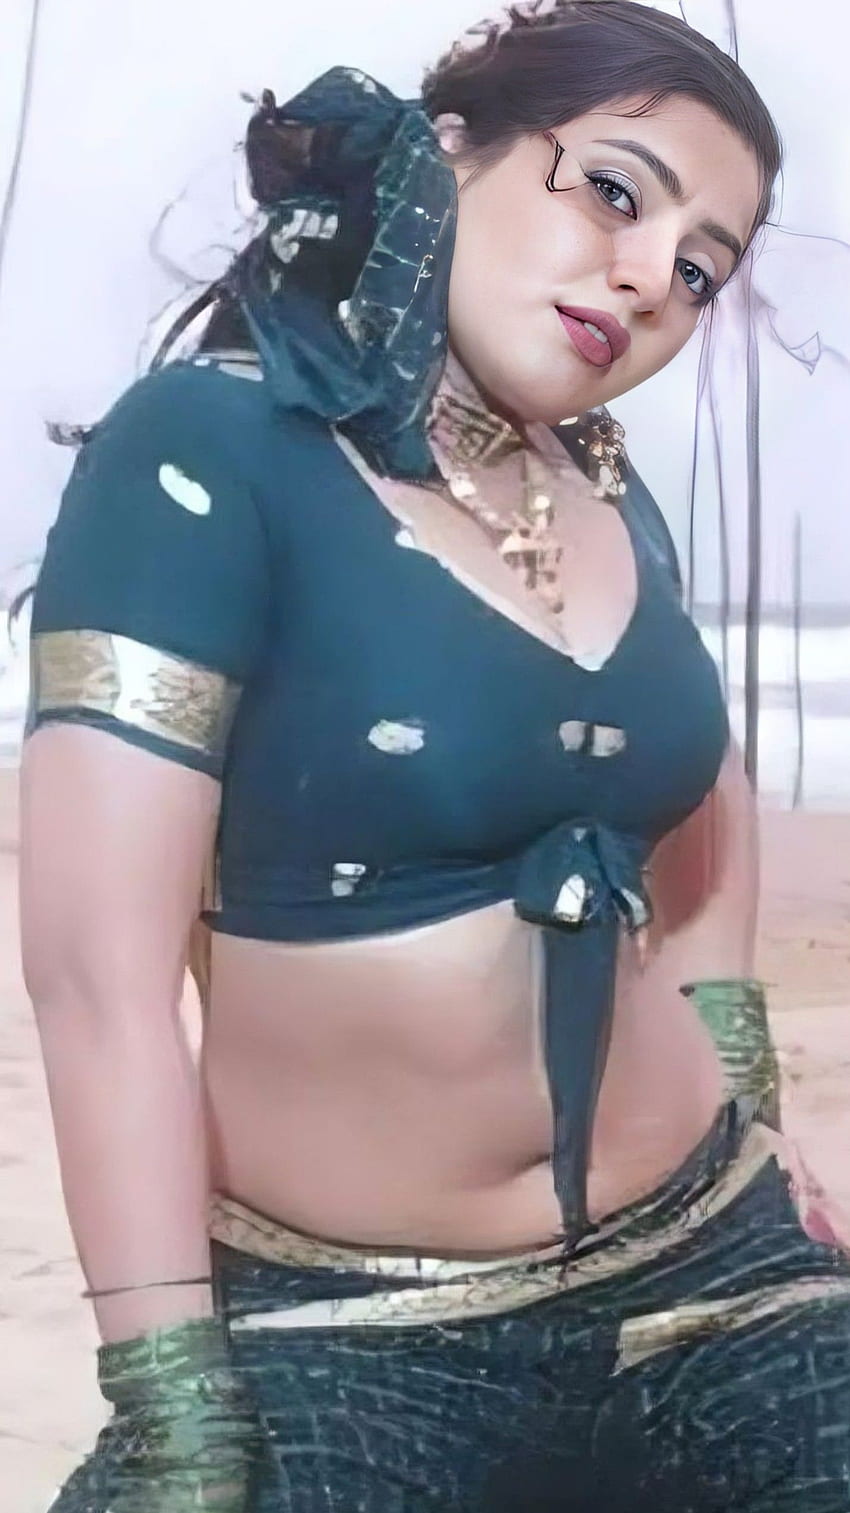 Mumtaz, aktris tamil, pusar wallpaper ponsel HD